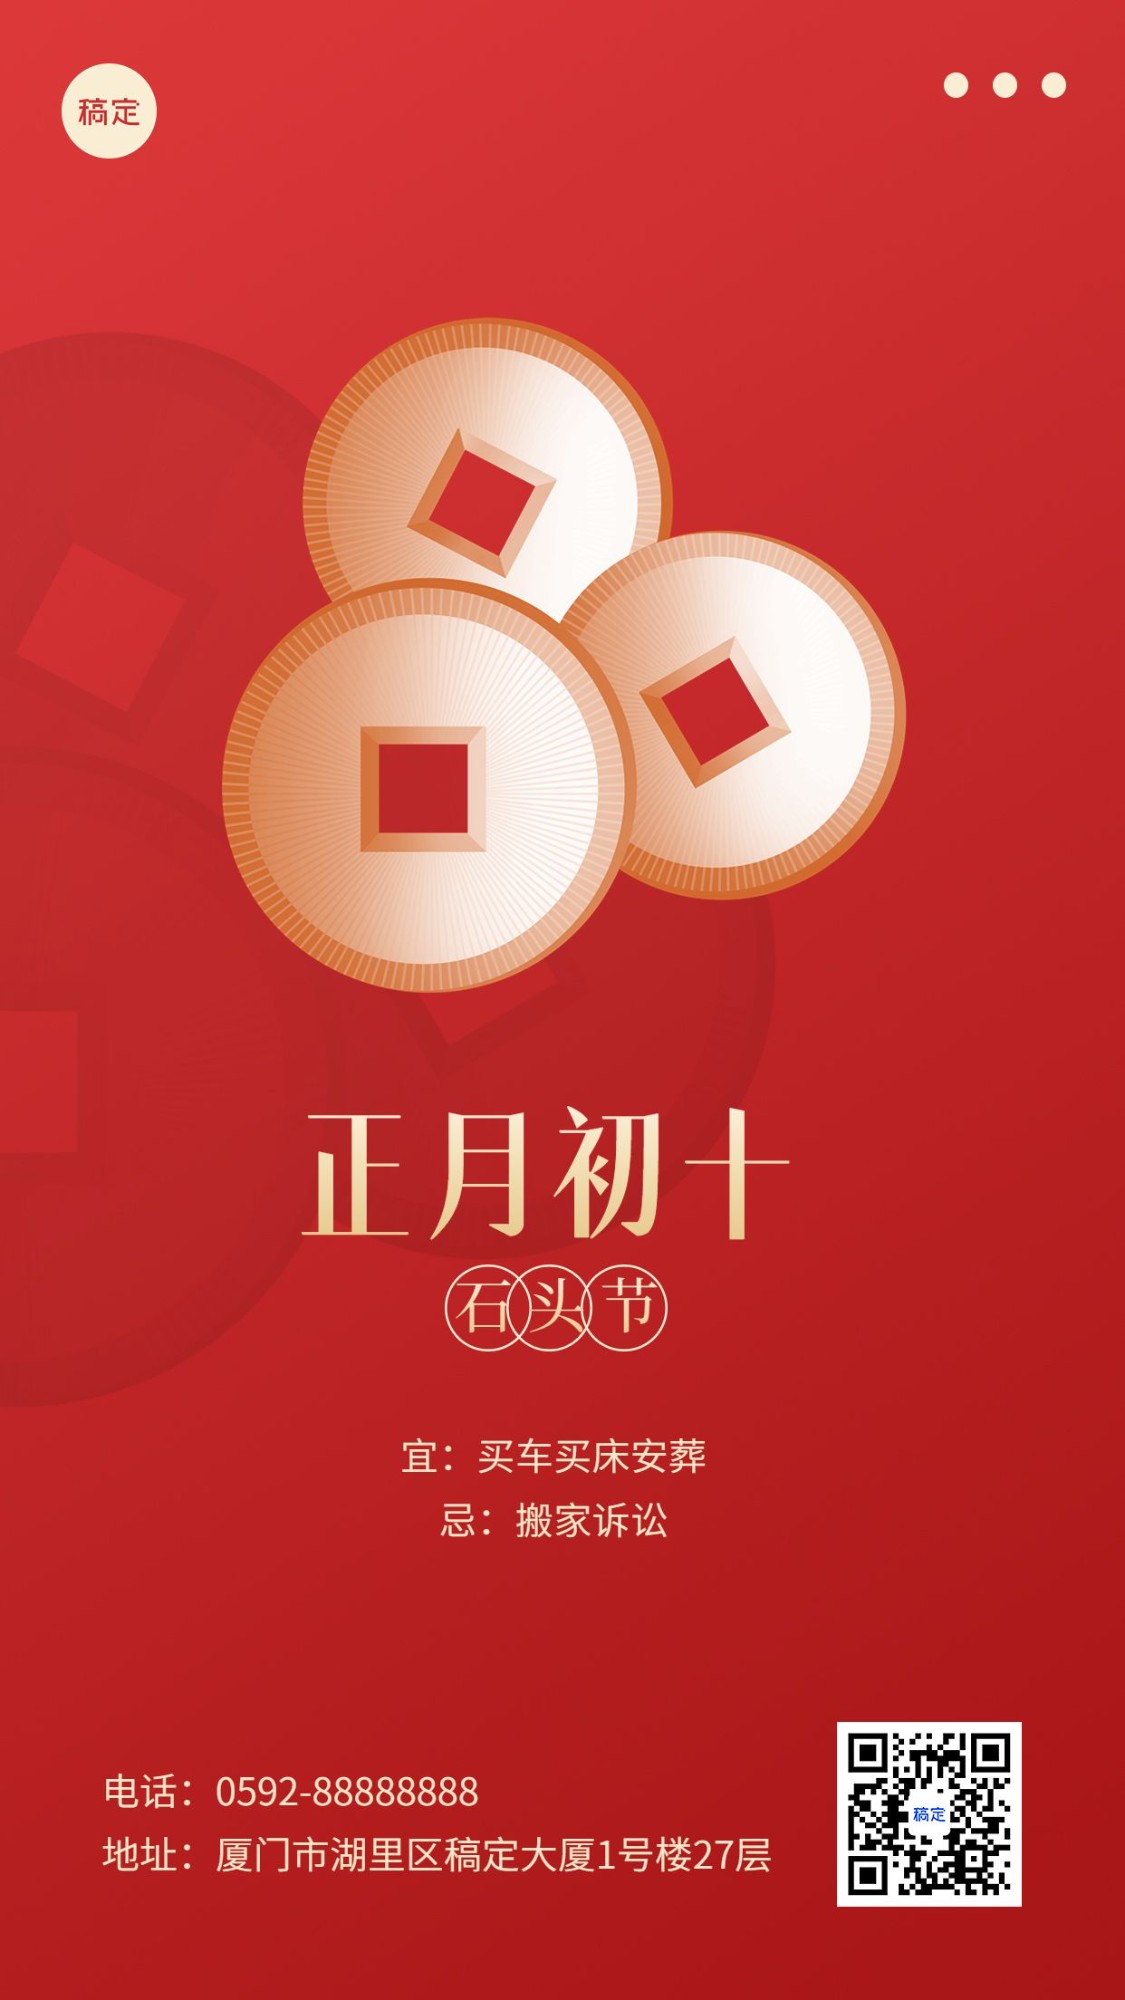 春节新年祝福正月初十简约排版套系手机海报